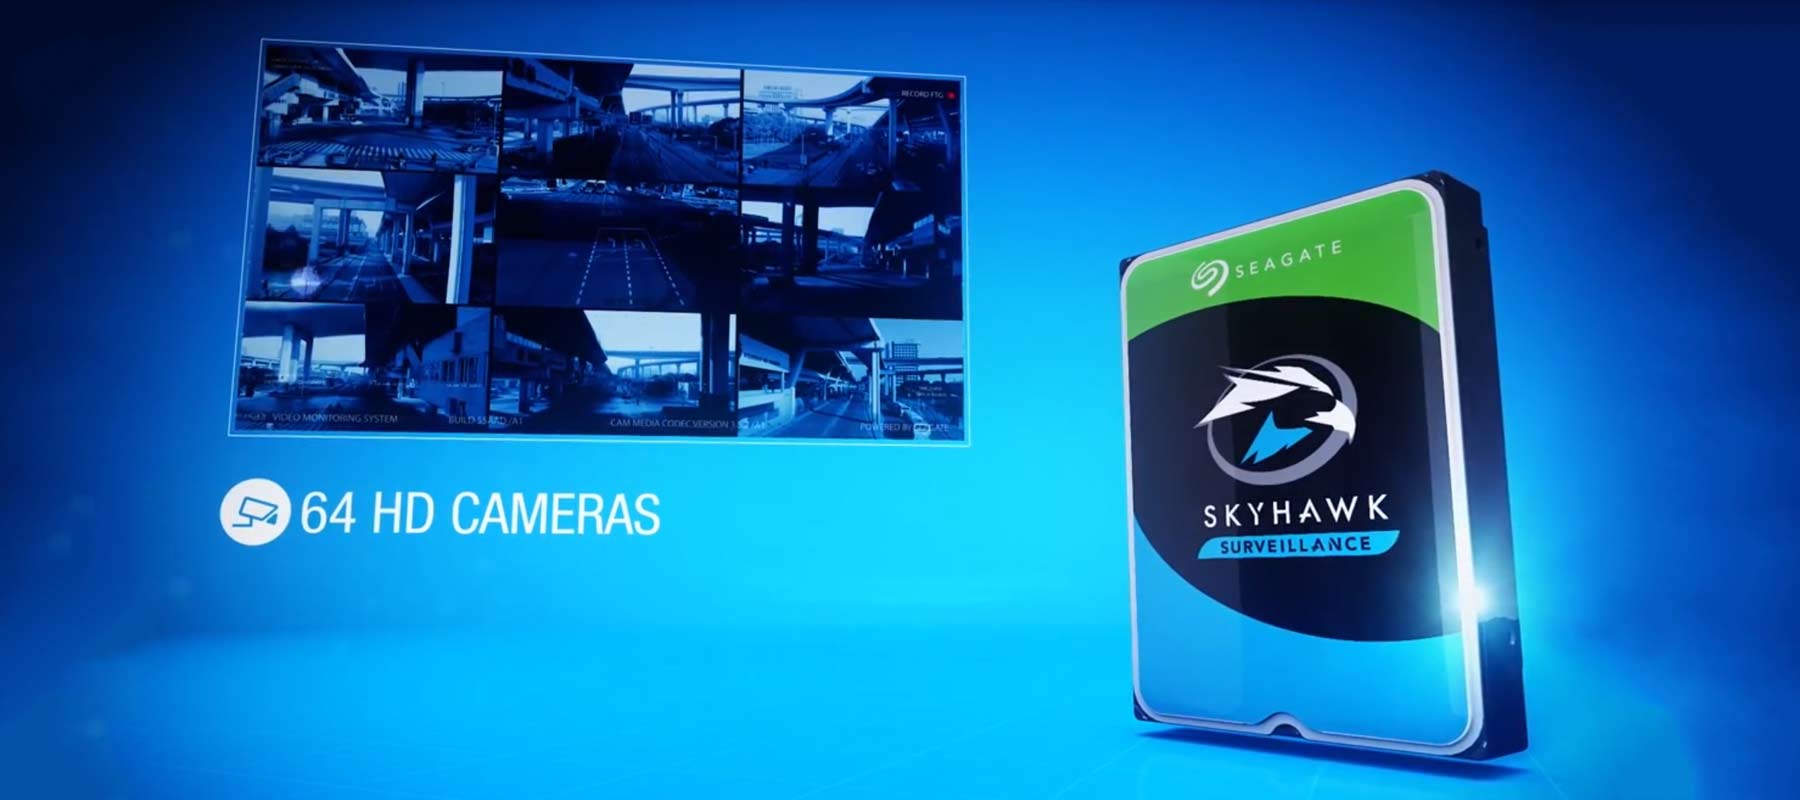 پشتیبانی هارد دیسک سیگیت Skyhawk ظرفیت 6 ترابایت از 64 دوربین hd